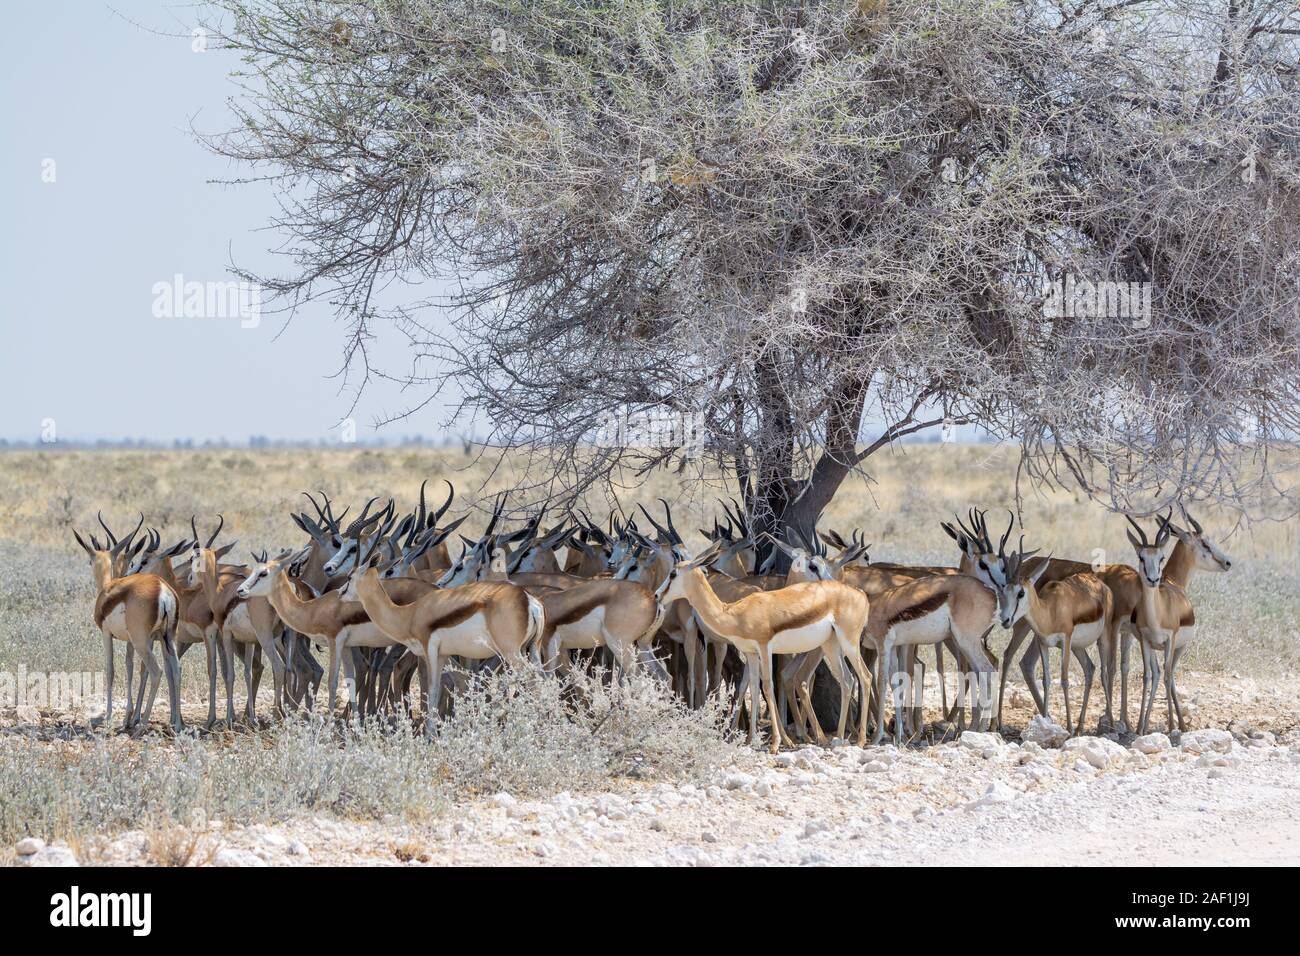 Springbok under the shade of a tree at noon, Etosha National Park, Namibia Stock Photo